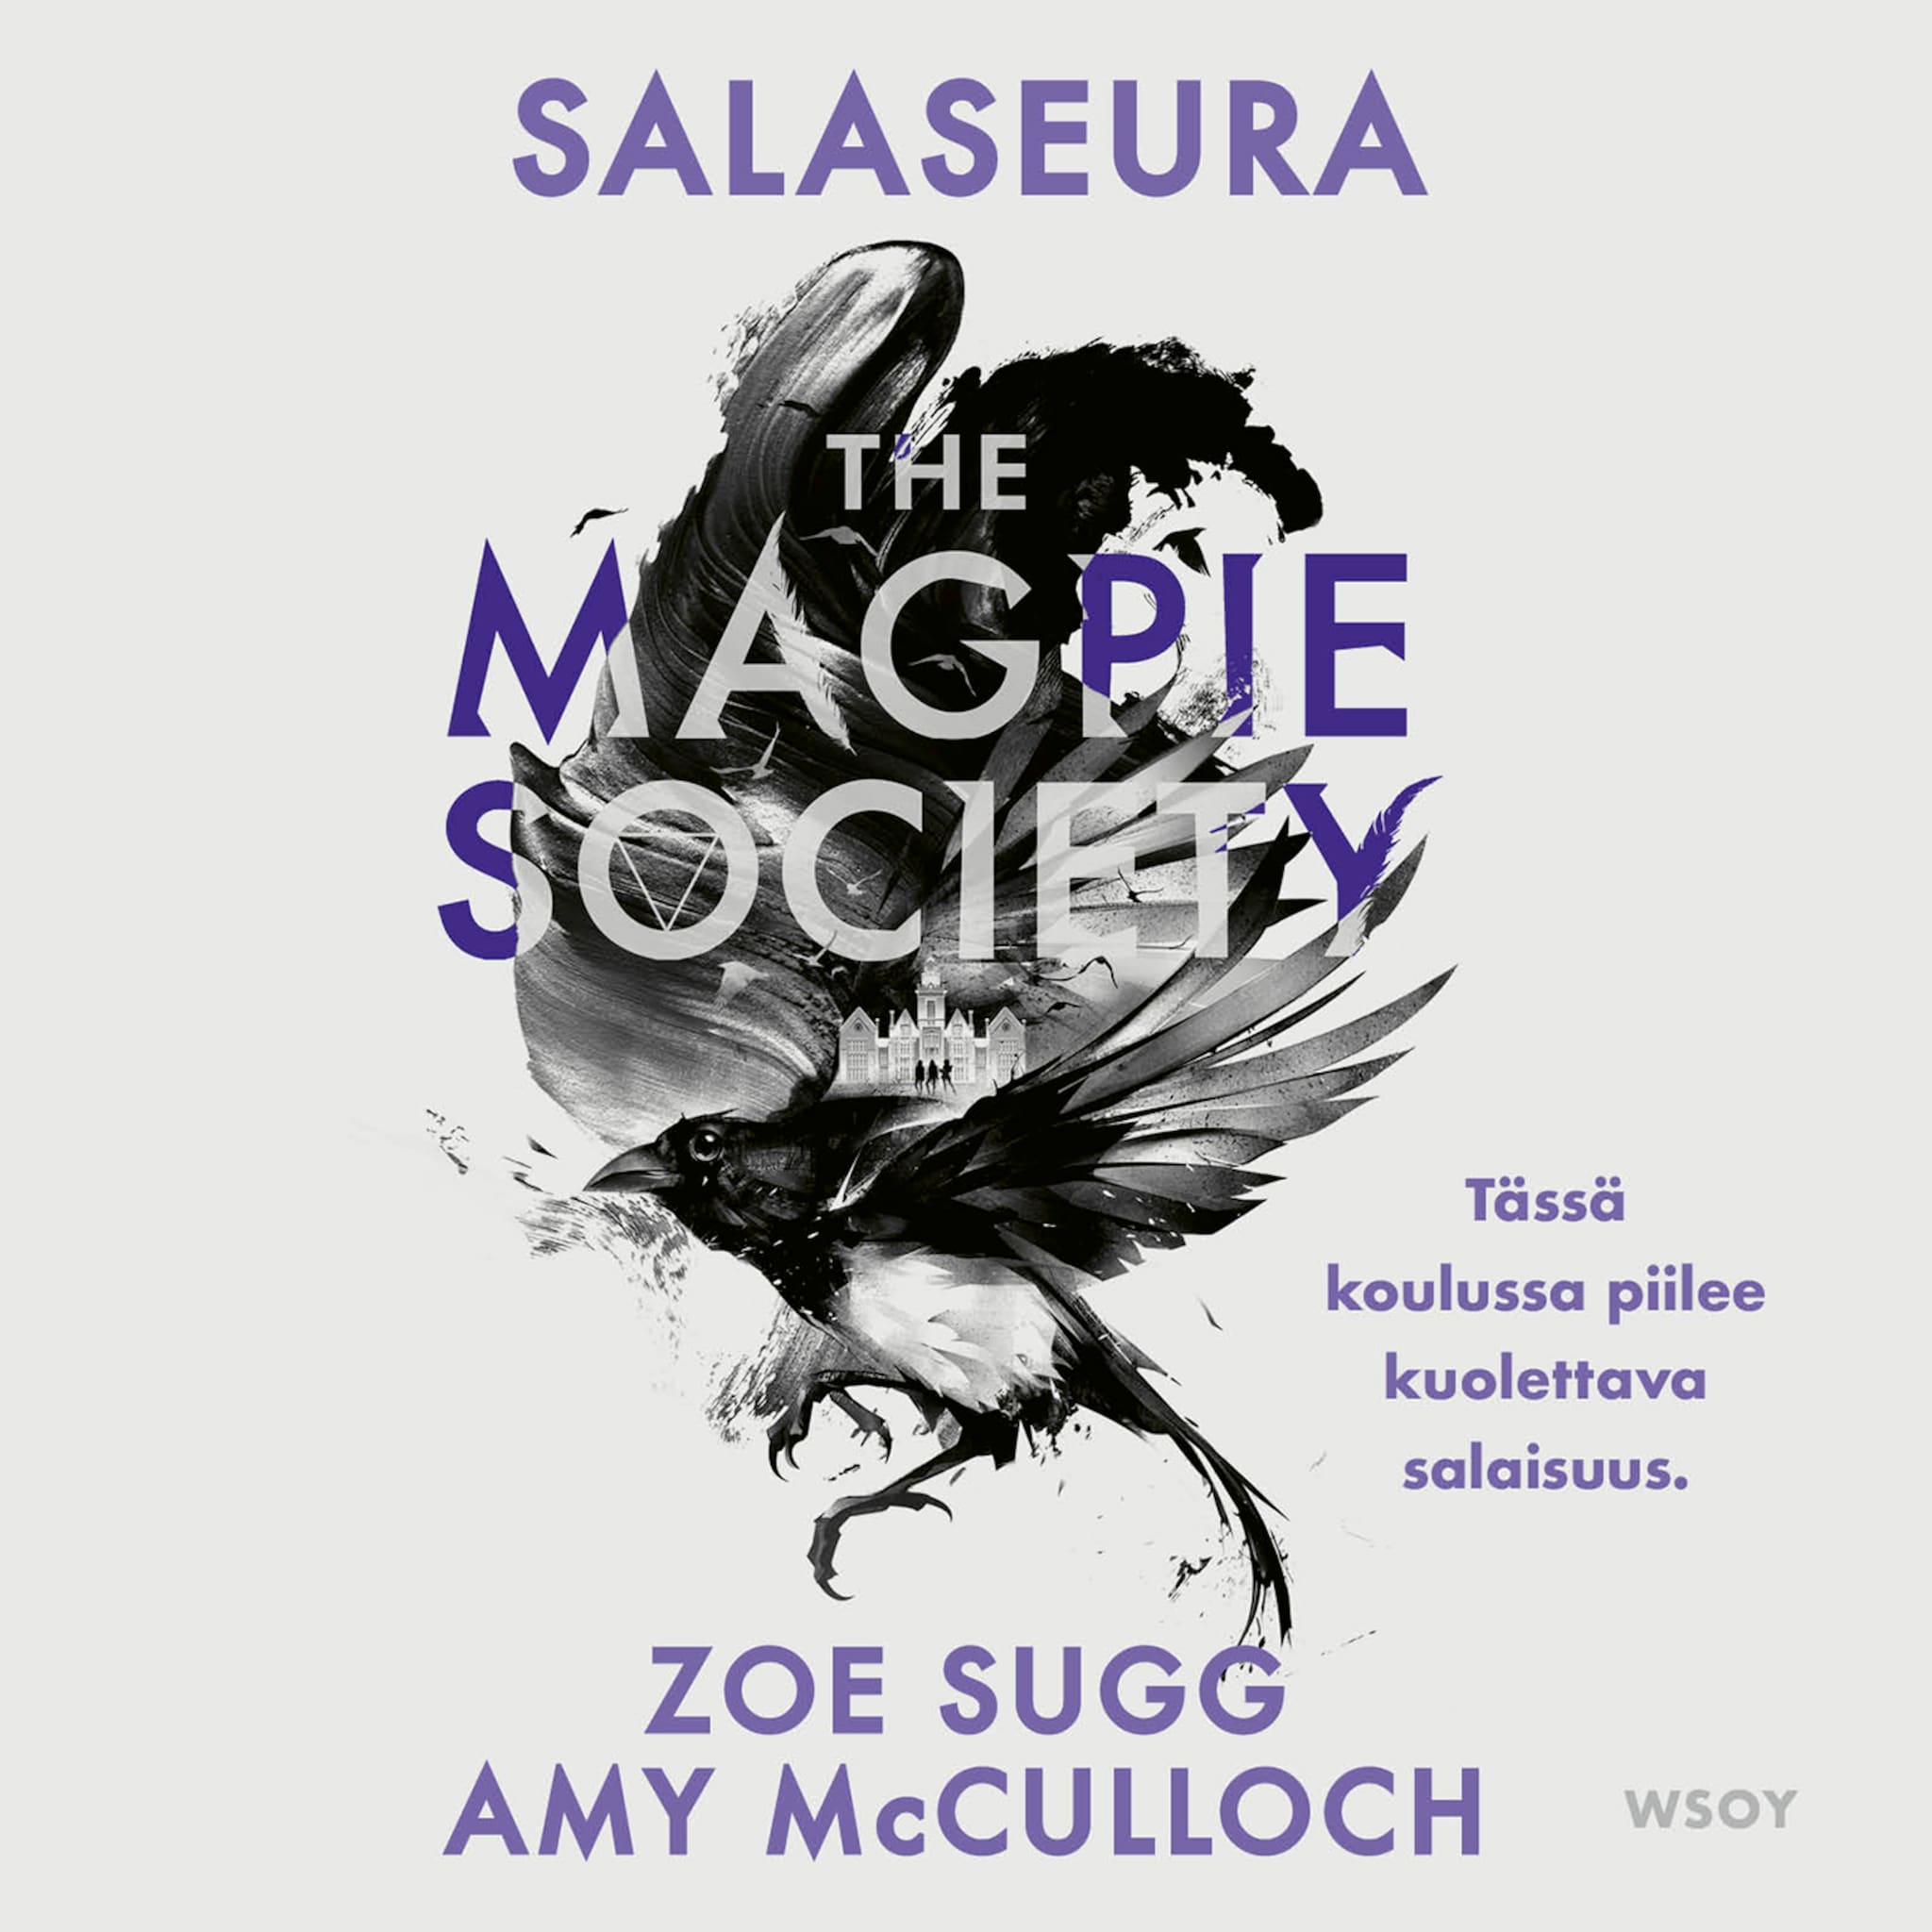 The magpie society : salaseura ilmaiseksi